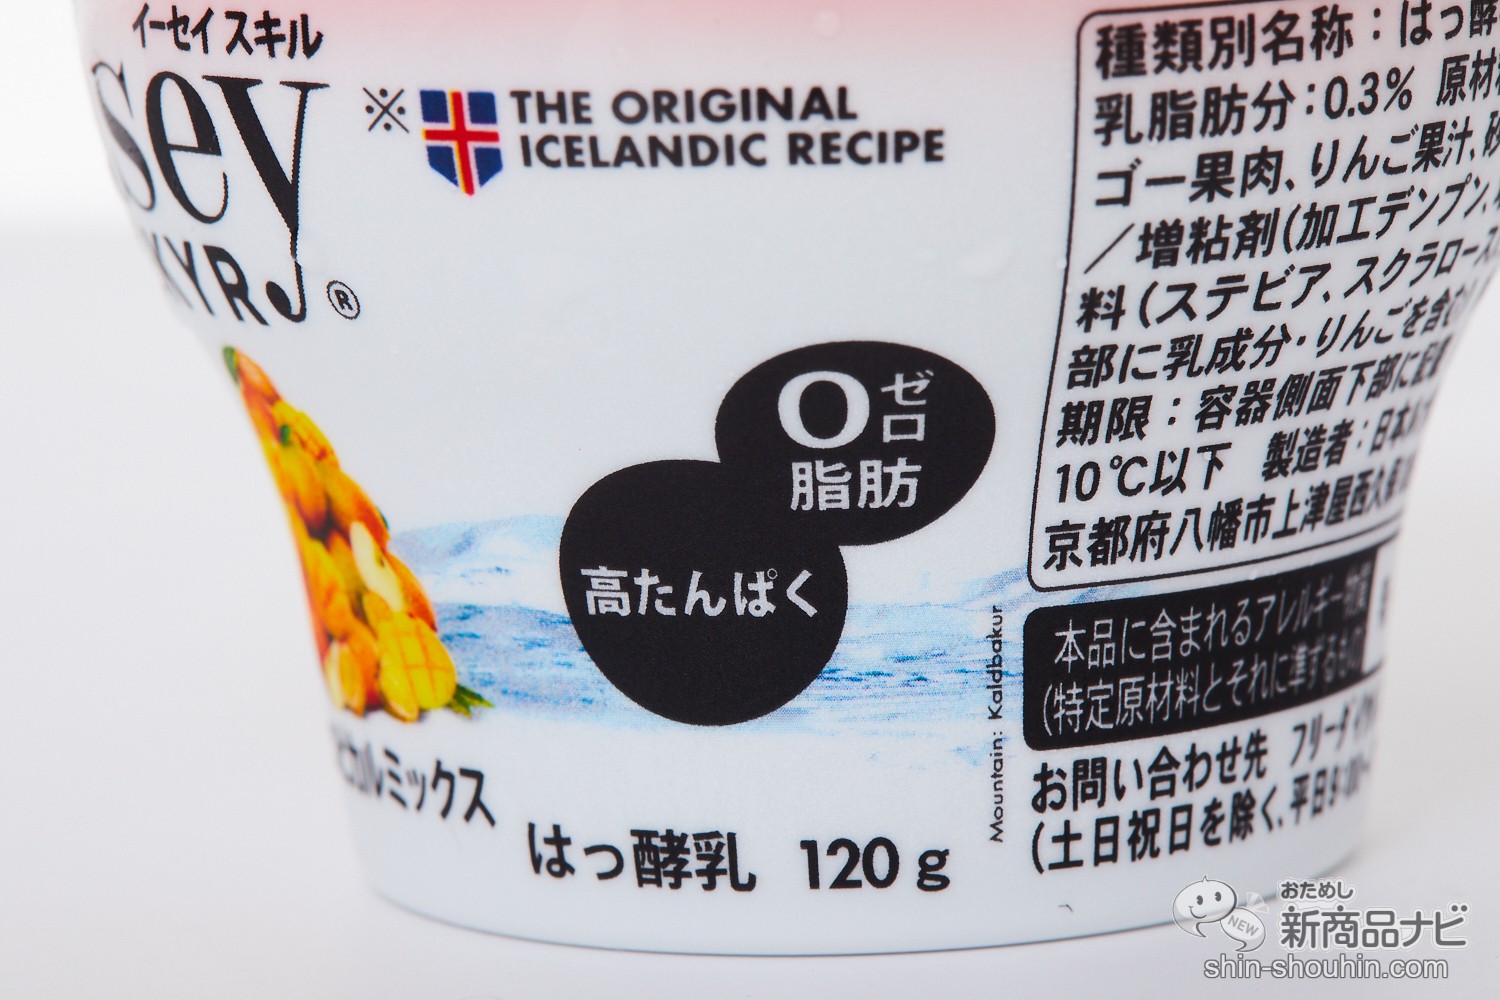 市場 送料無料 マンゴーココナッツ 商品 イーセイスキル SKYR チルド 冷蔵 Isey 2ケースセット 日本ルナ